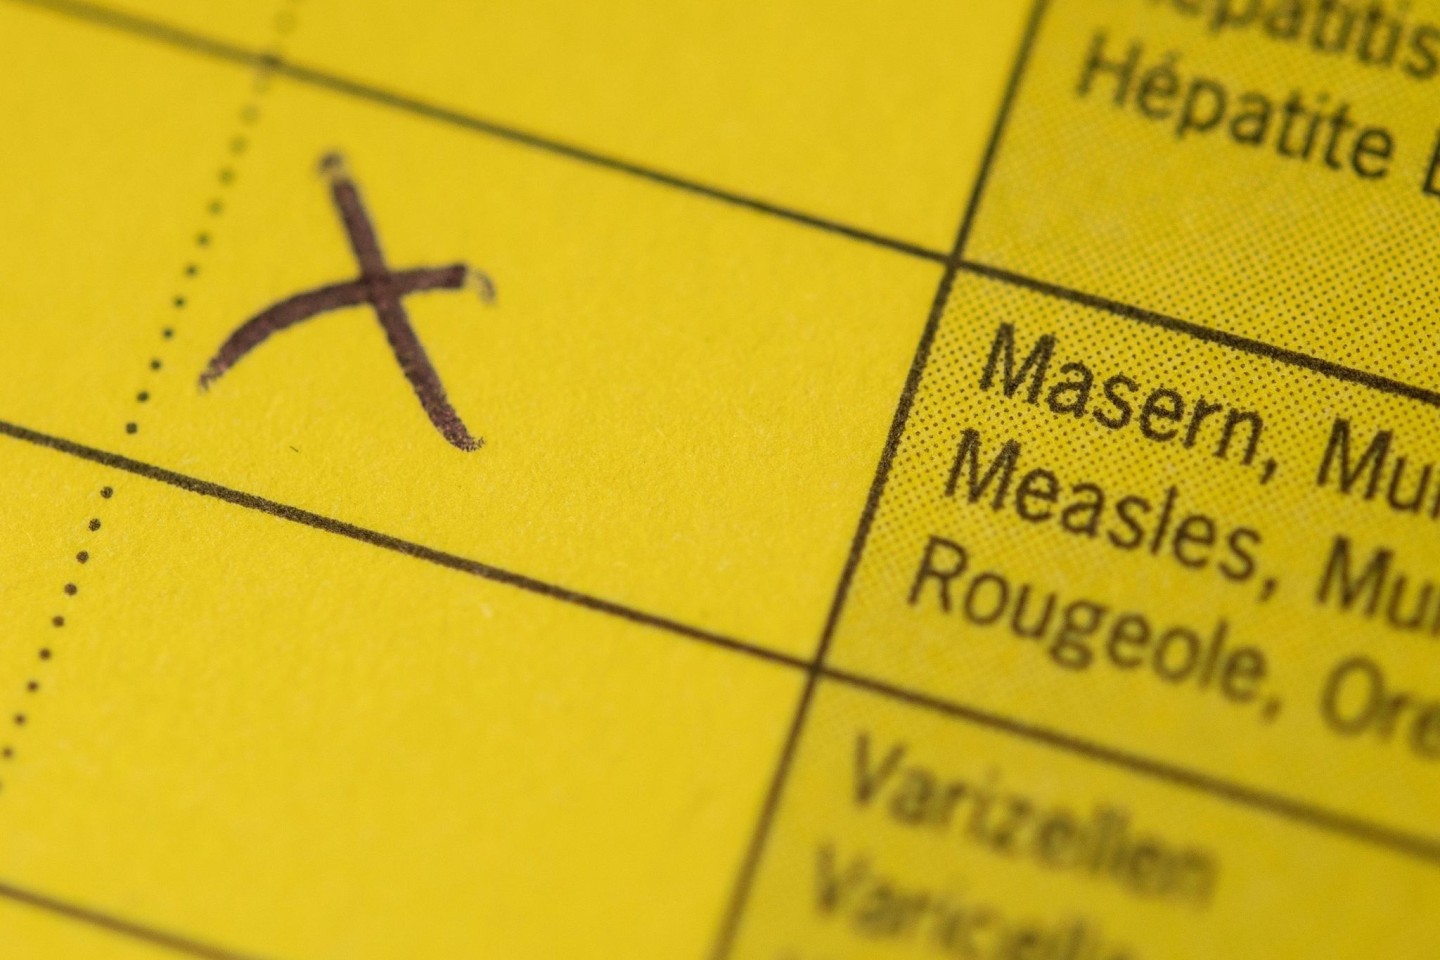 Mit einer Impfpflicht sollen Masern in Deutschland ausgerottet werden - ob diese jedoch verfassungskonform ist, klärt heute das Bundesverfassungsgericht.